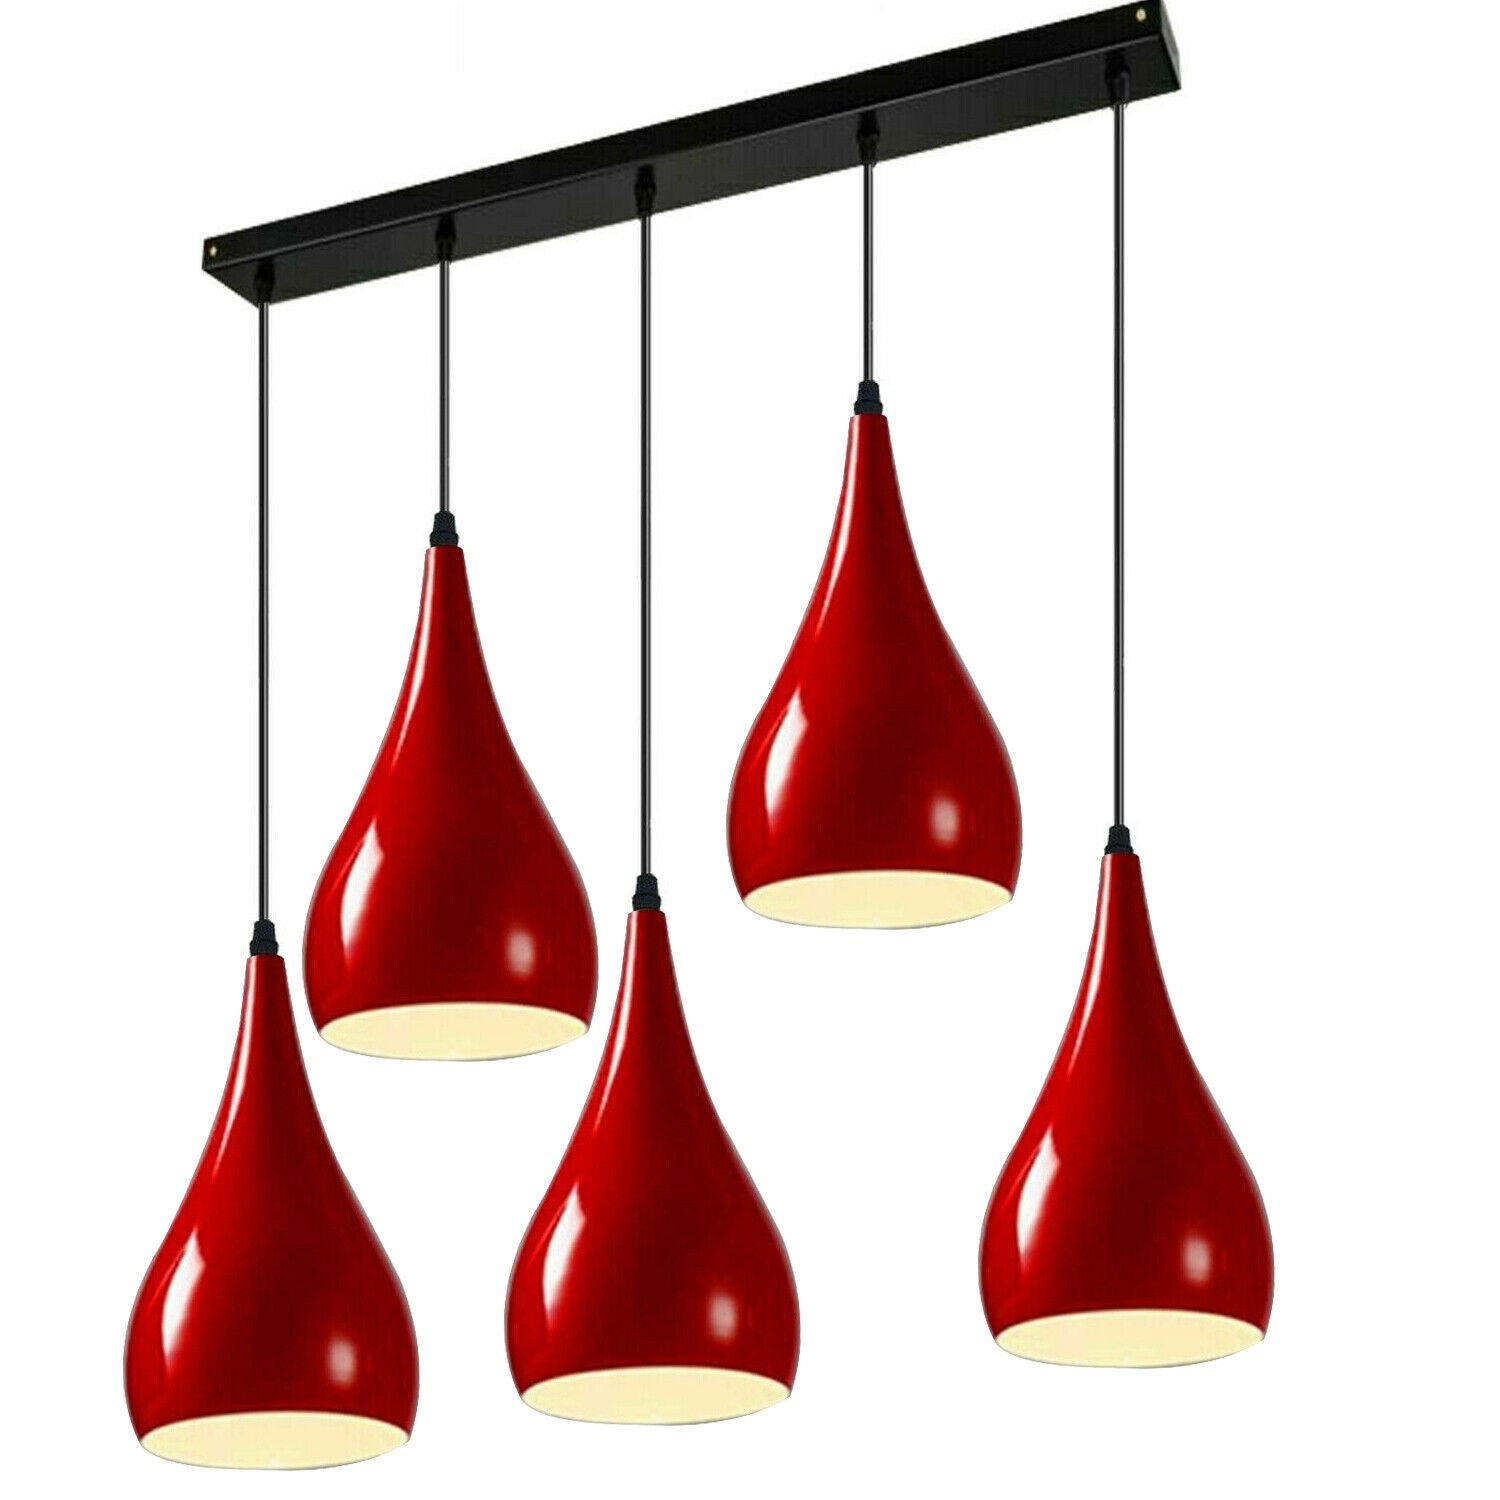 Vintage 5 Way Teardrop Red Metal Shade Ceiling Pendant Light